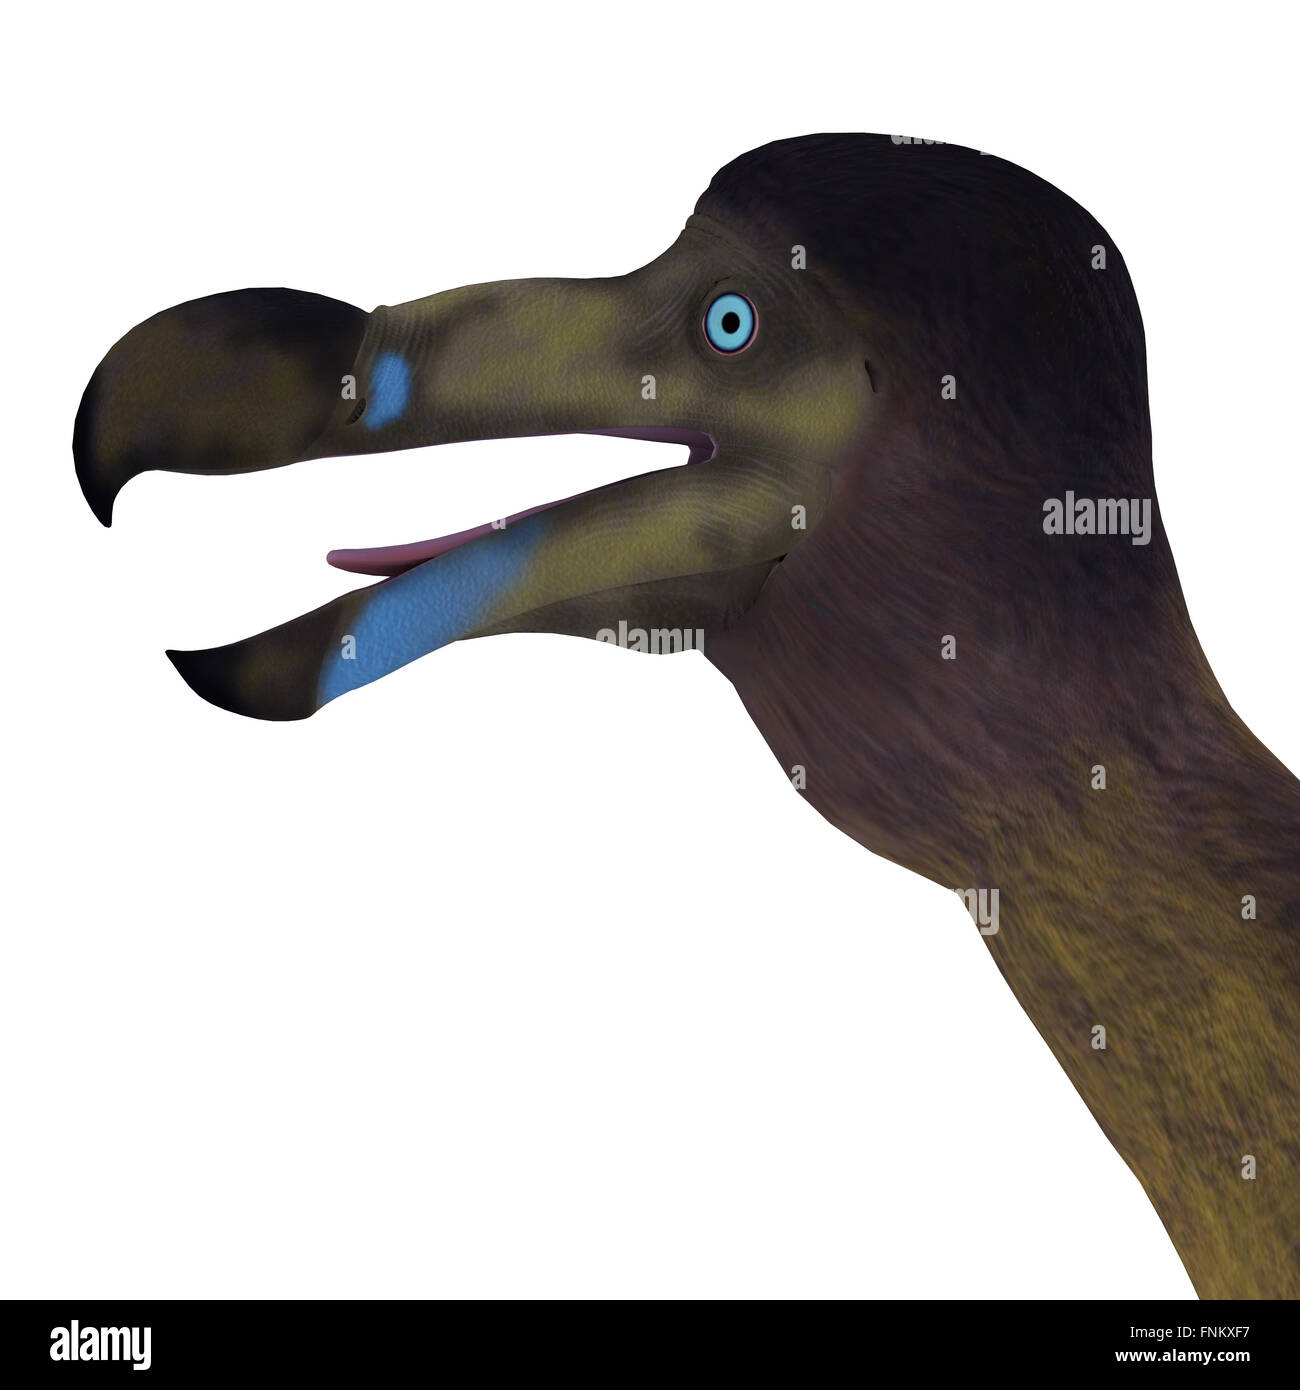 El Dodo es un extinto ave no voladora que vivió en la Isla Mauricio en el Océano Índico. Foto de stock